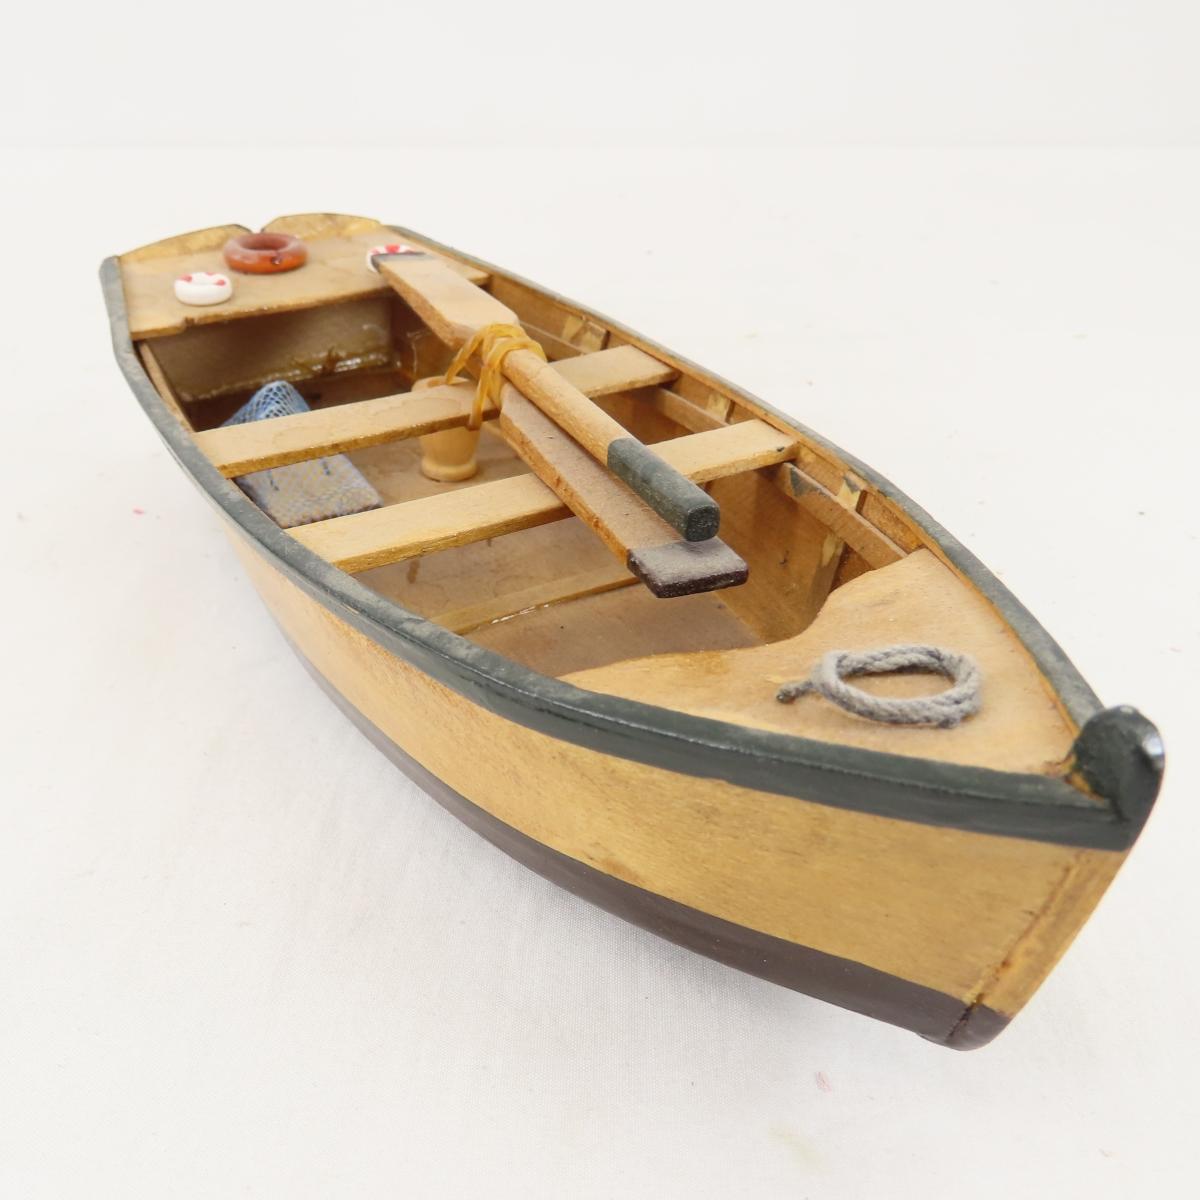 3 Vintage Wooden Boat Models - 10-10.5"